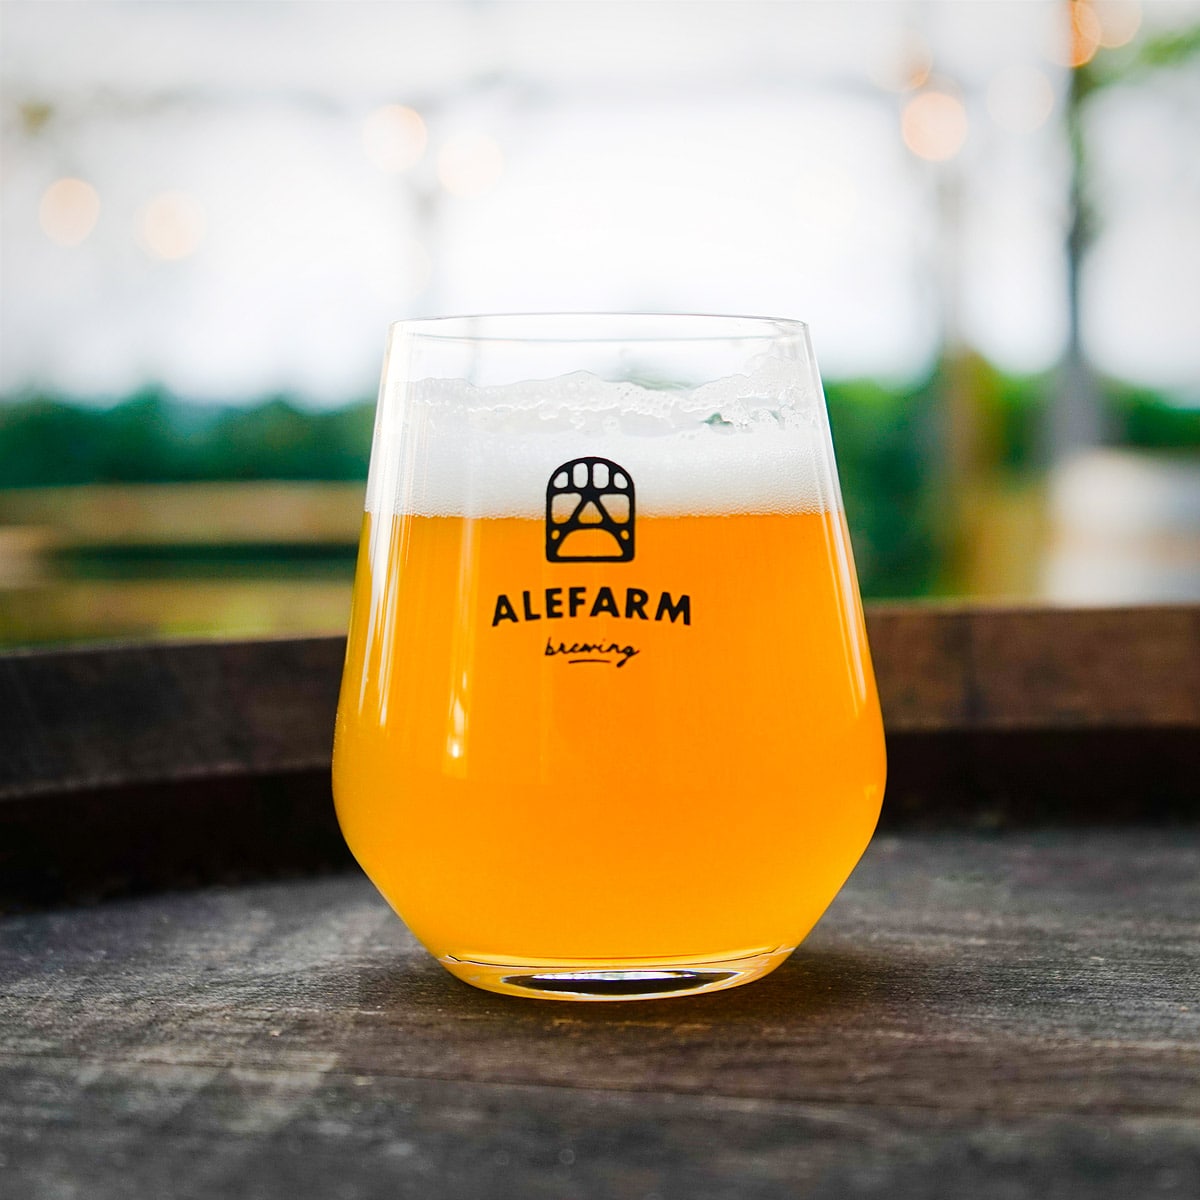 Alefarm Brewings Adventskalender forkæler dig med lækre øl